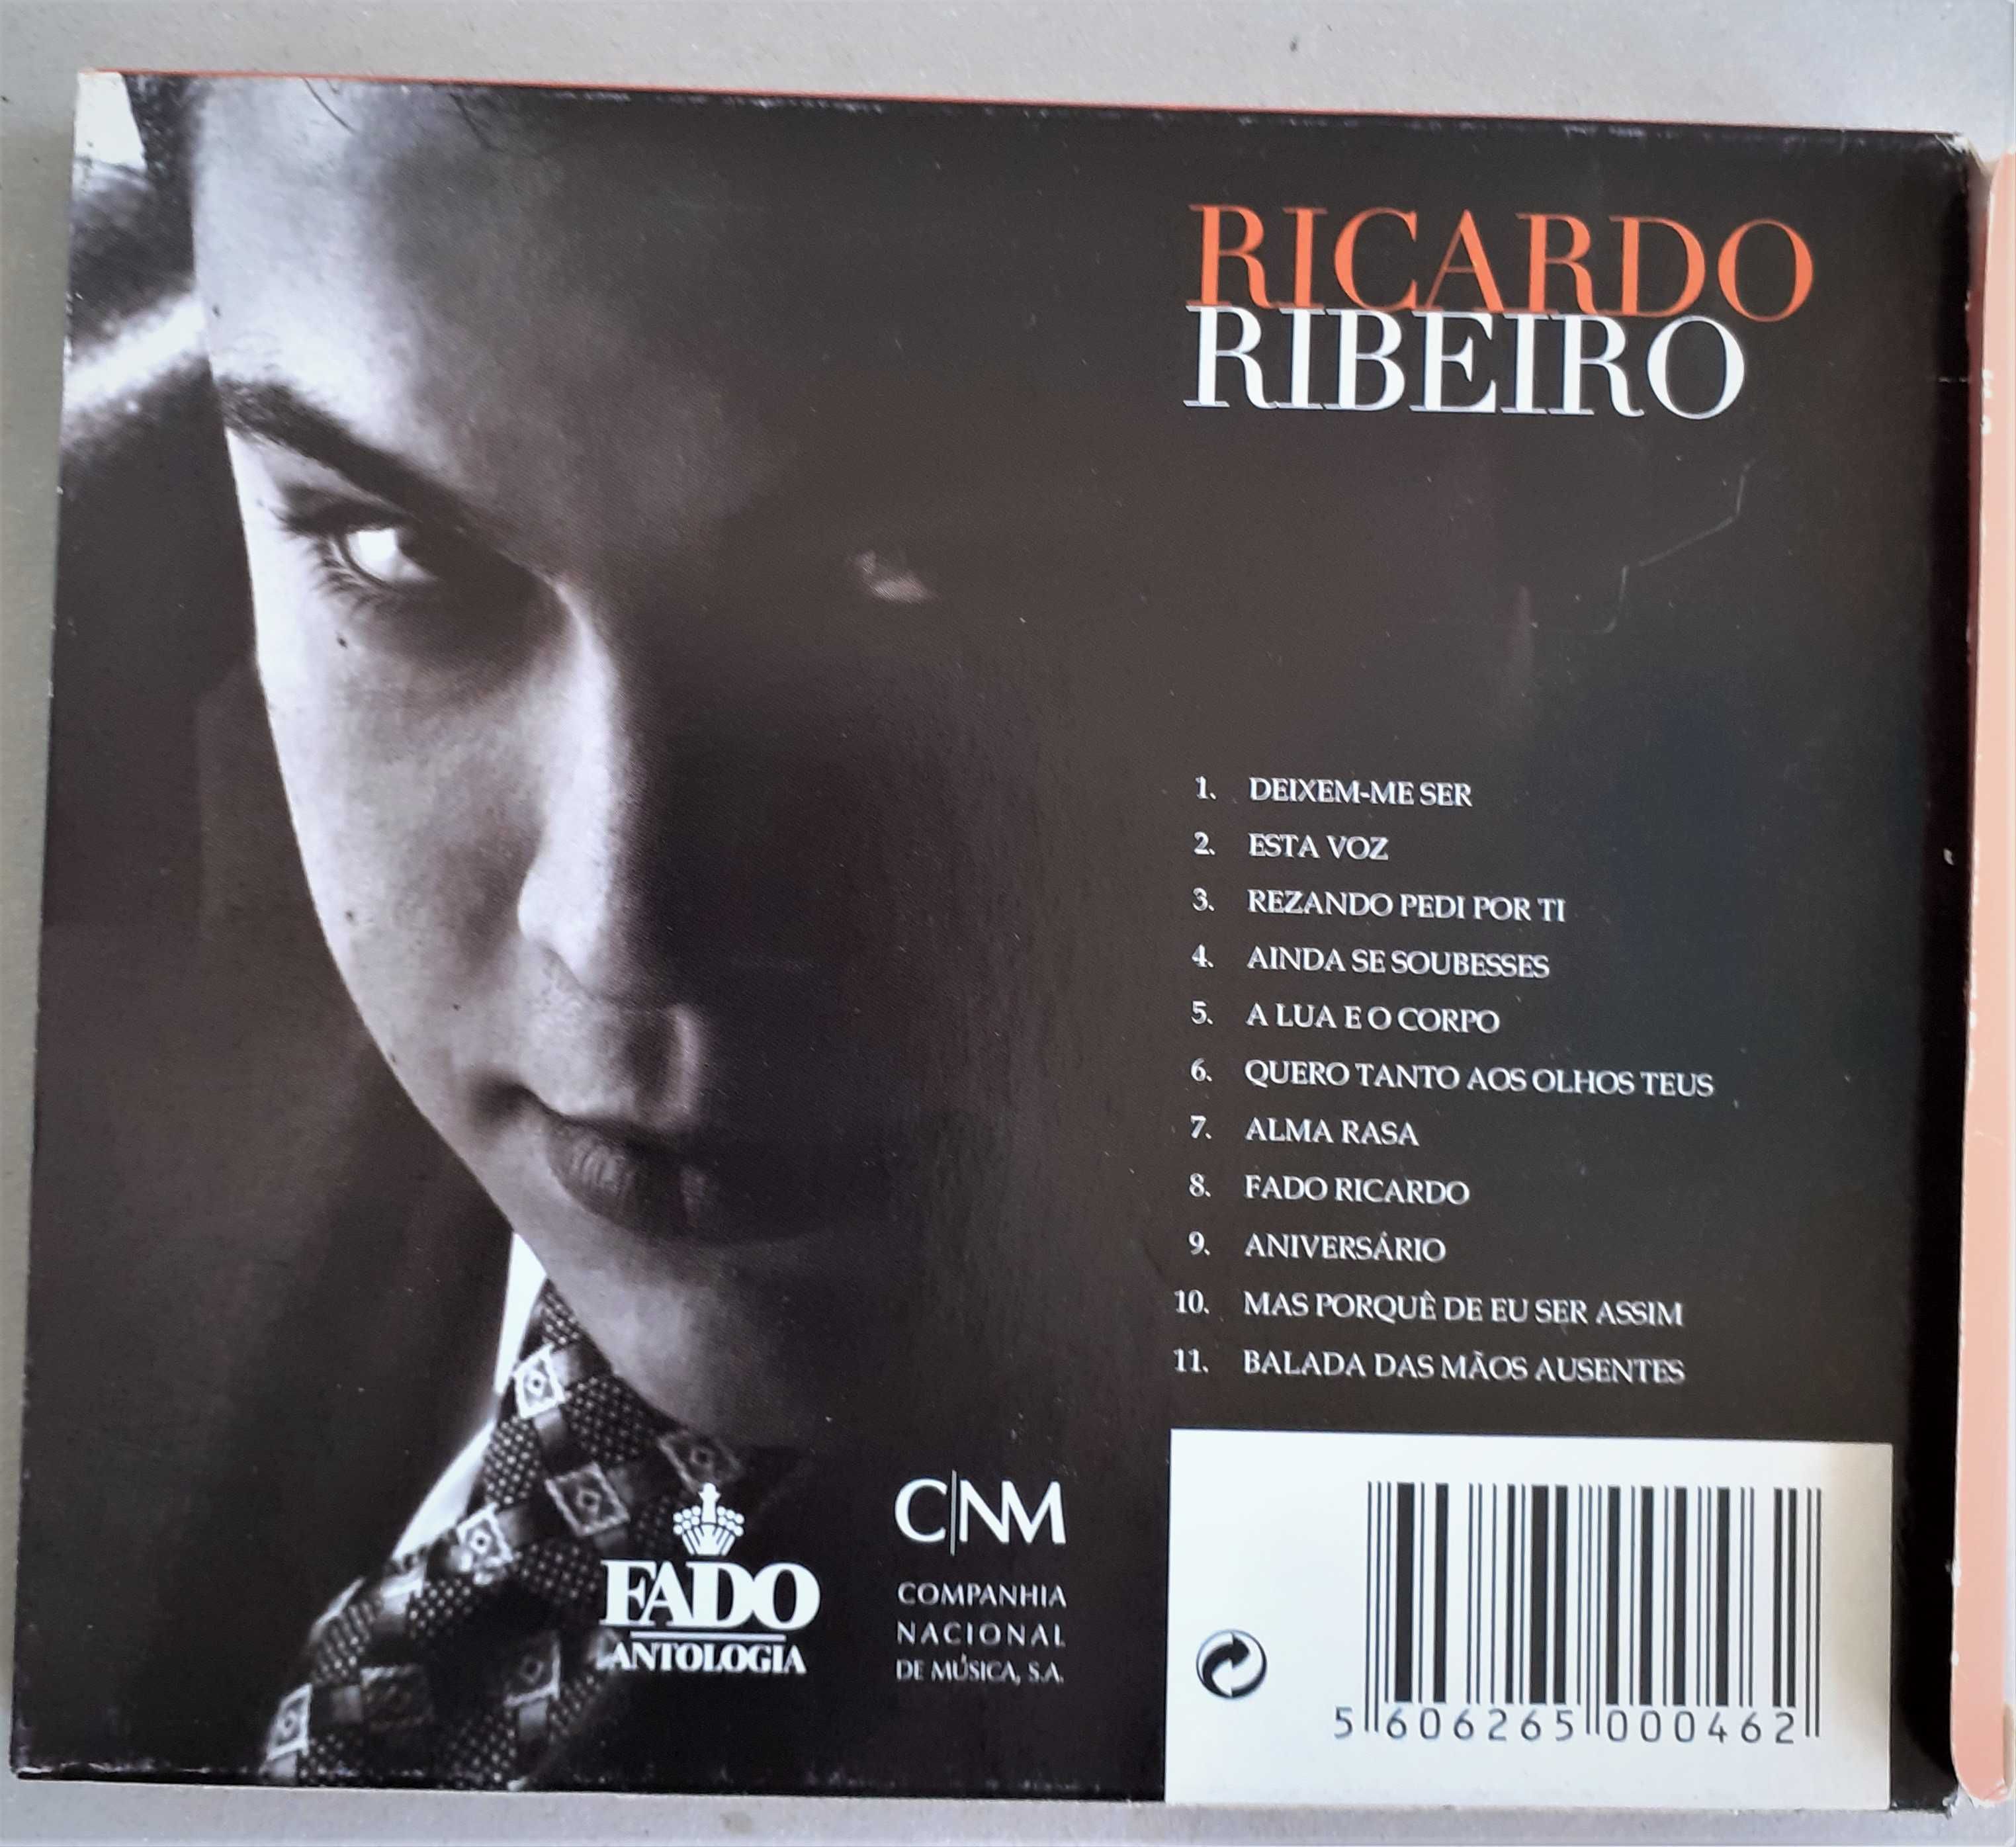 RICARDO RIBEIRO -Fado Antologia